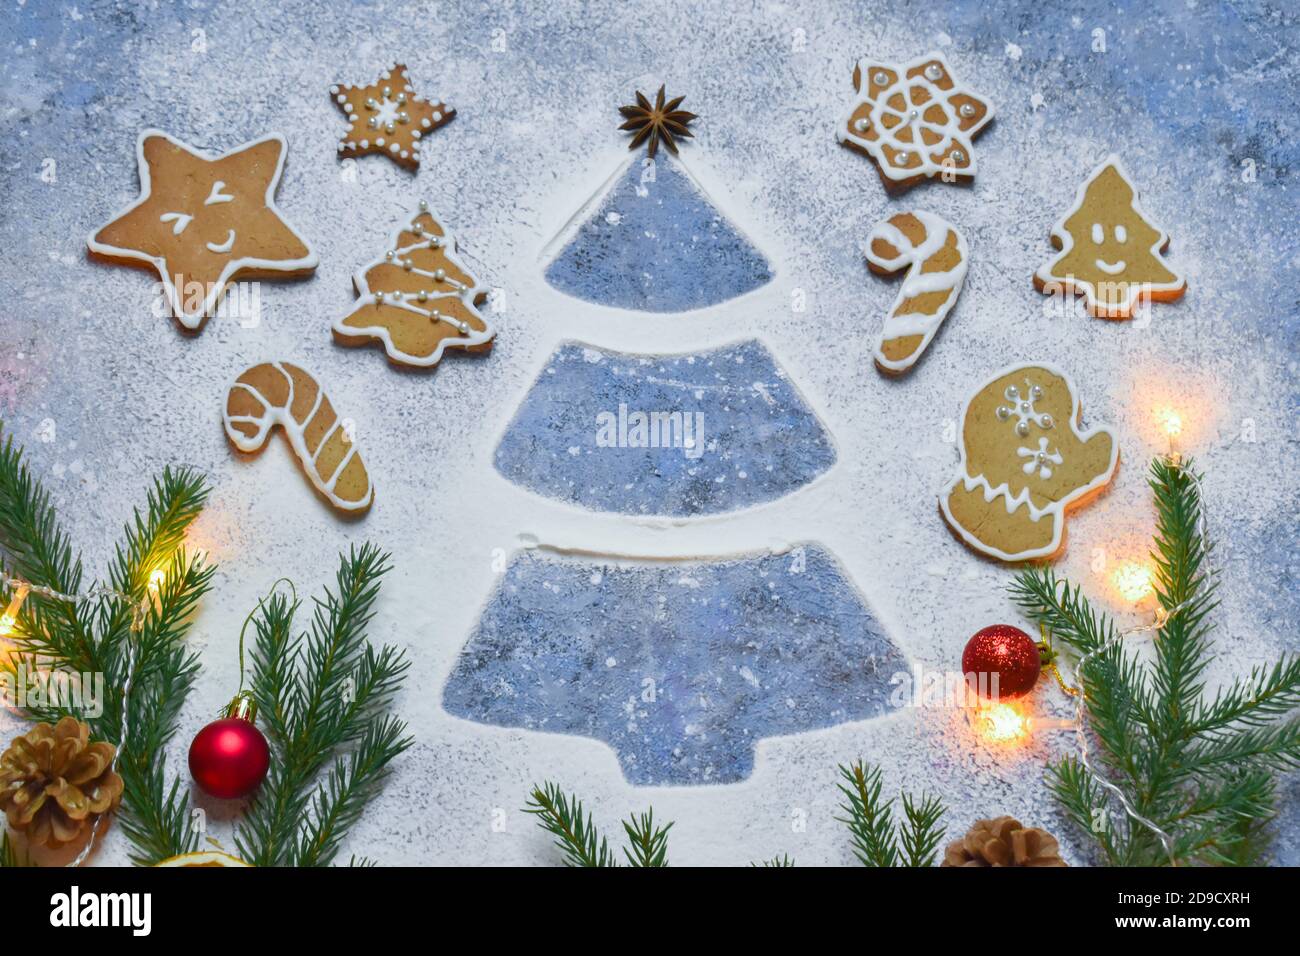 Weihnachtshintergrund mit einem Bild von einem Weihnachtsbaum und Ingwer-Kekse. Stockfoto